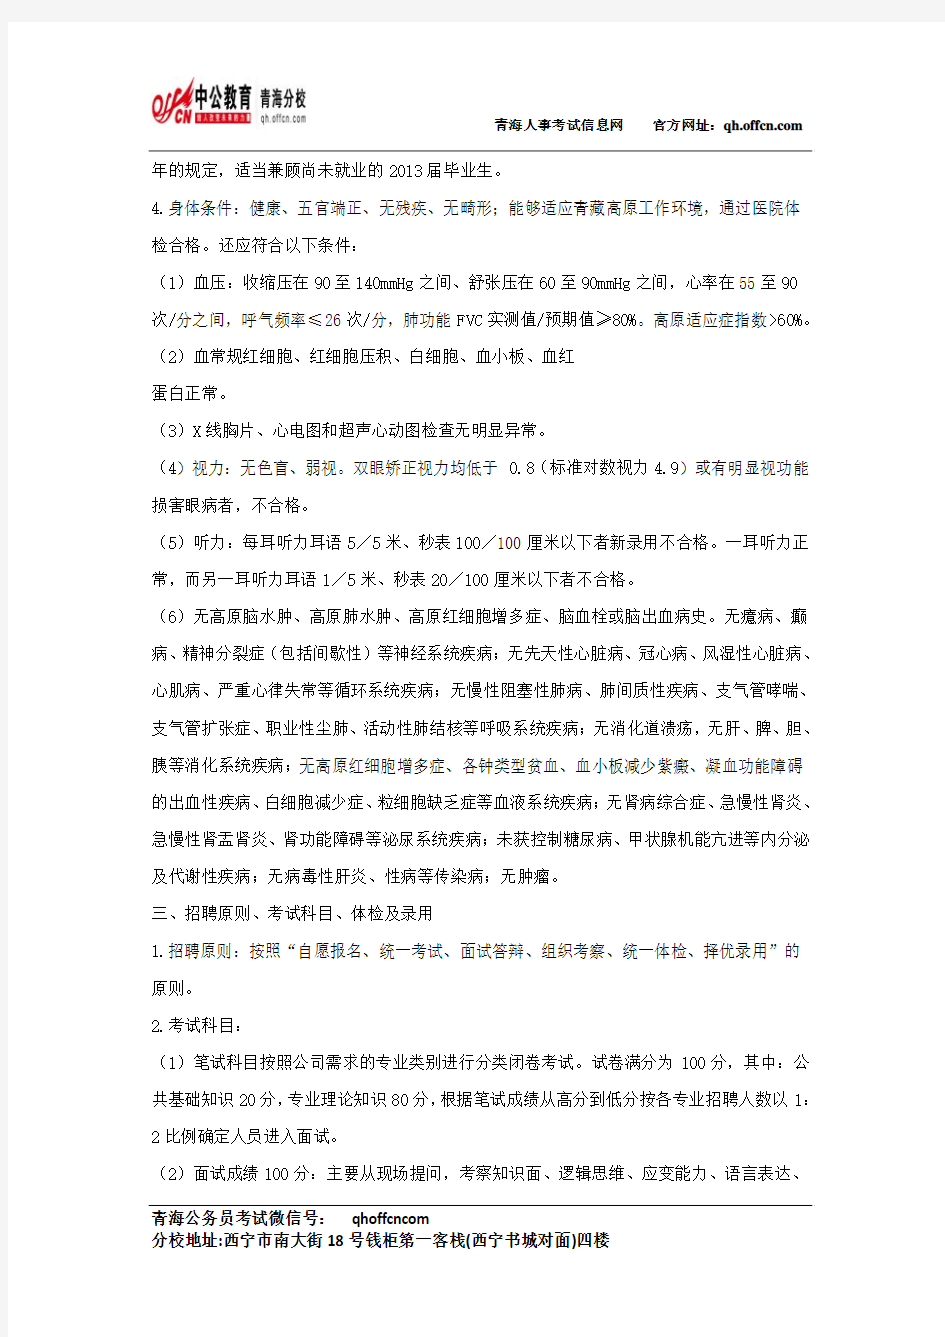 青海人事考试信息网：青藏铁路公司面向社会招聘工作人员公告